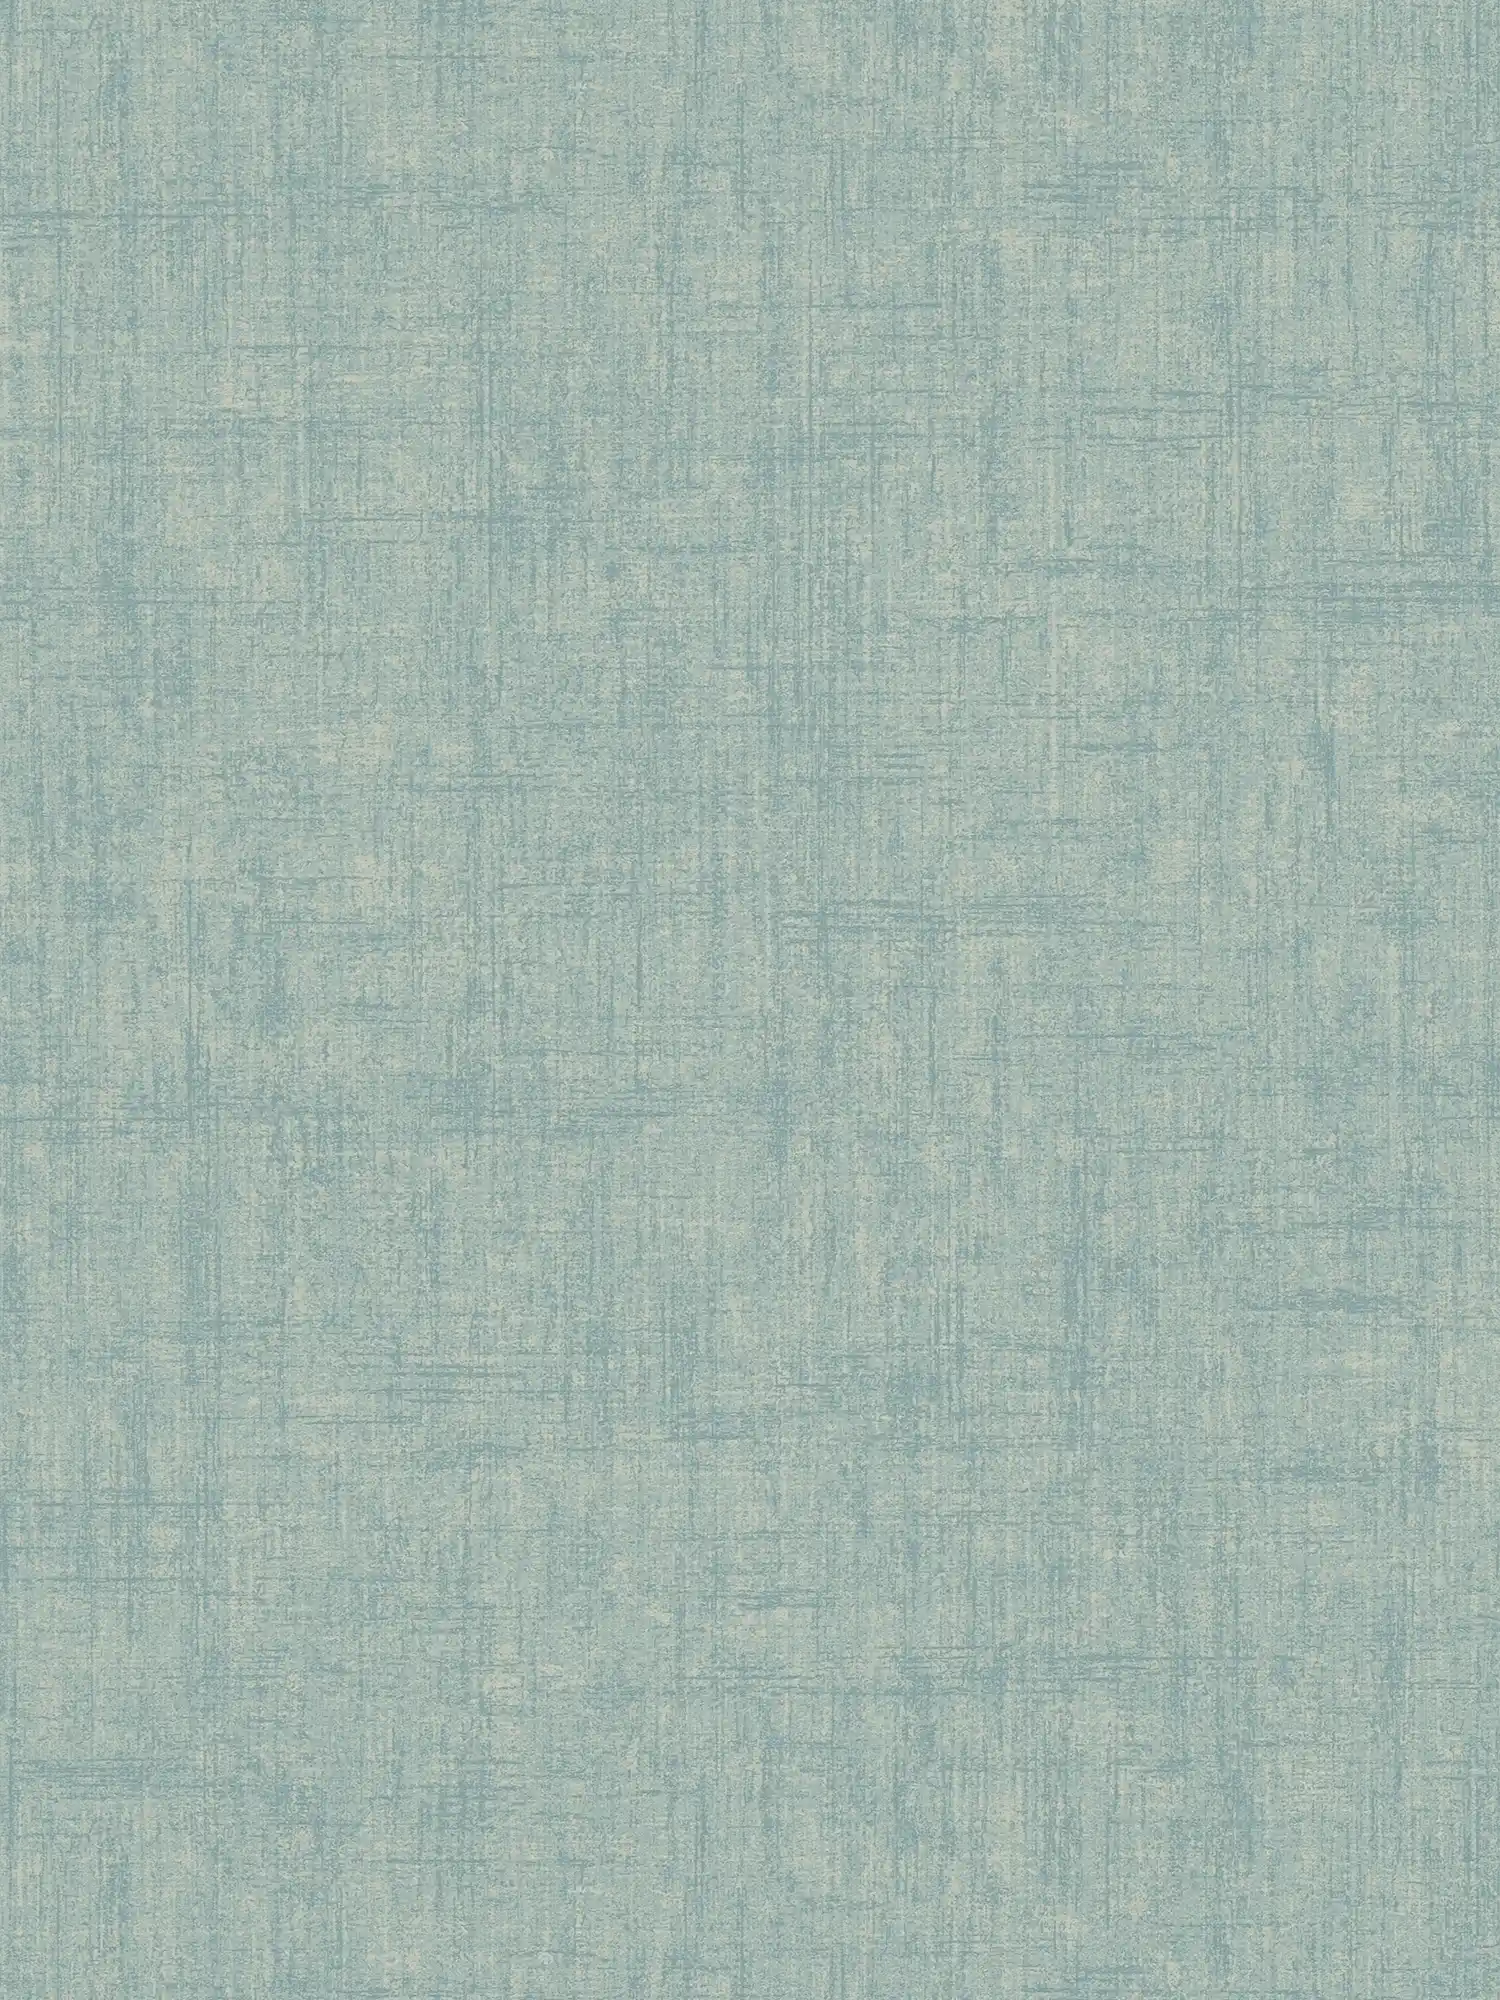 Watergroen behang, grove linnenlook - Blauw, Groen
